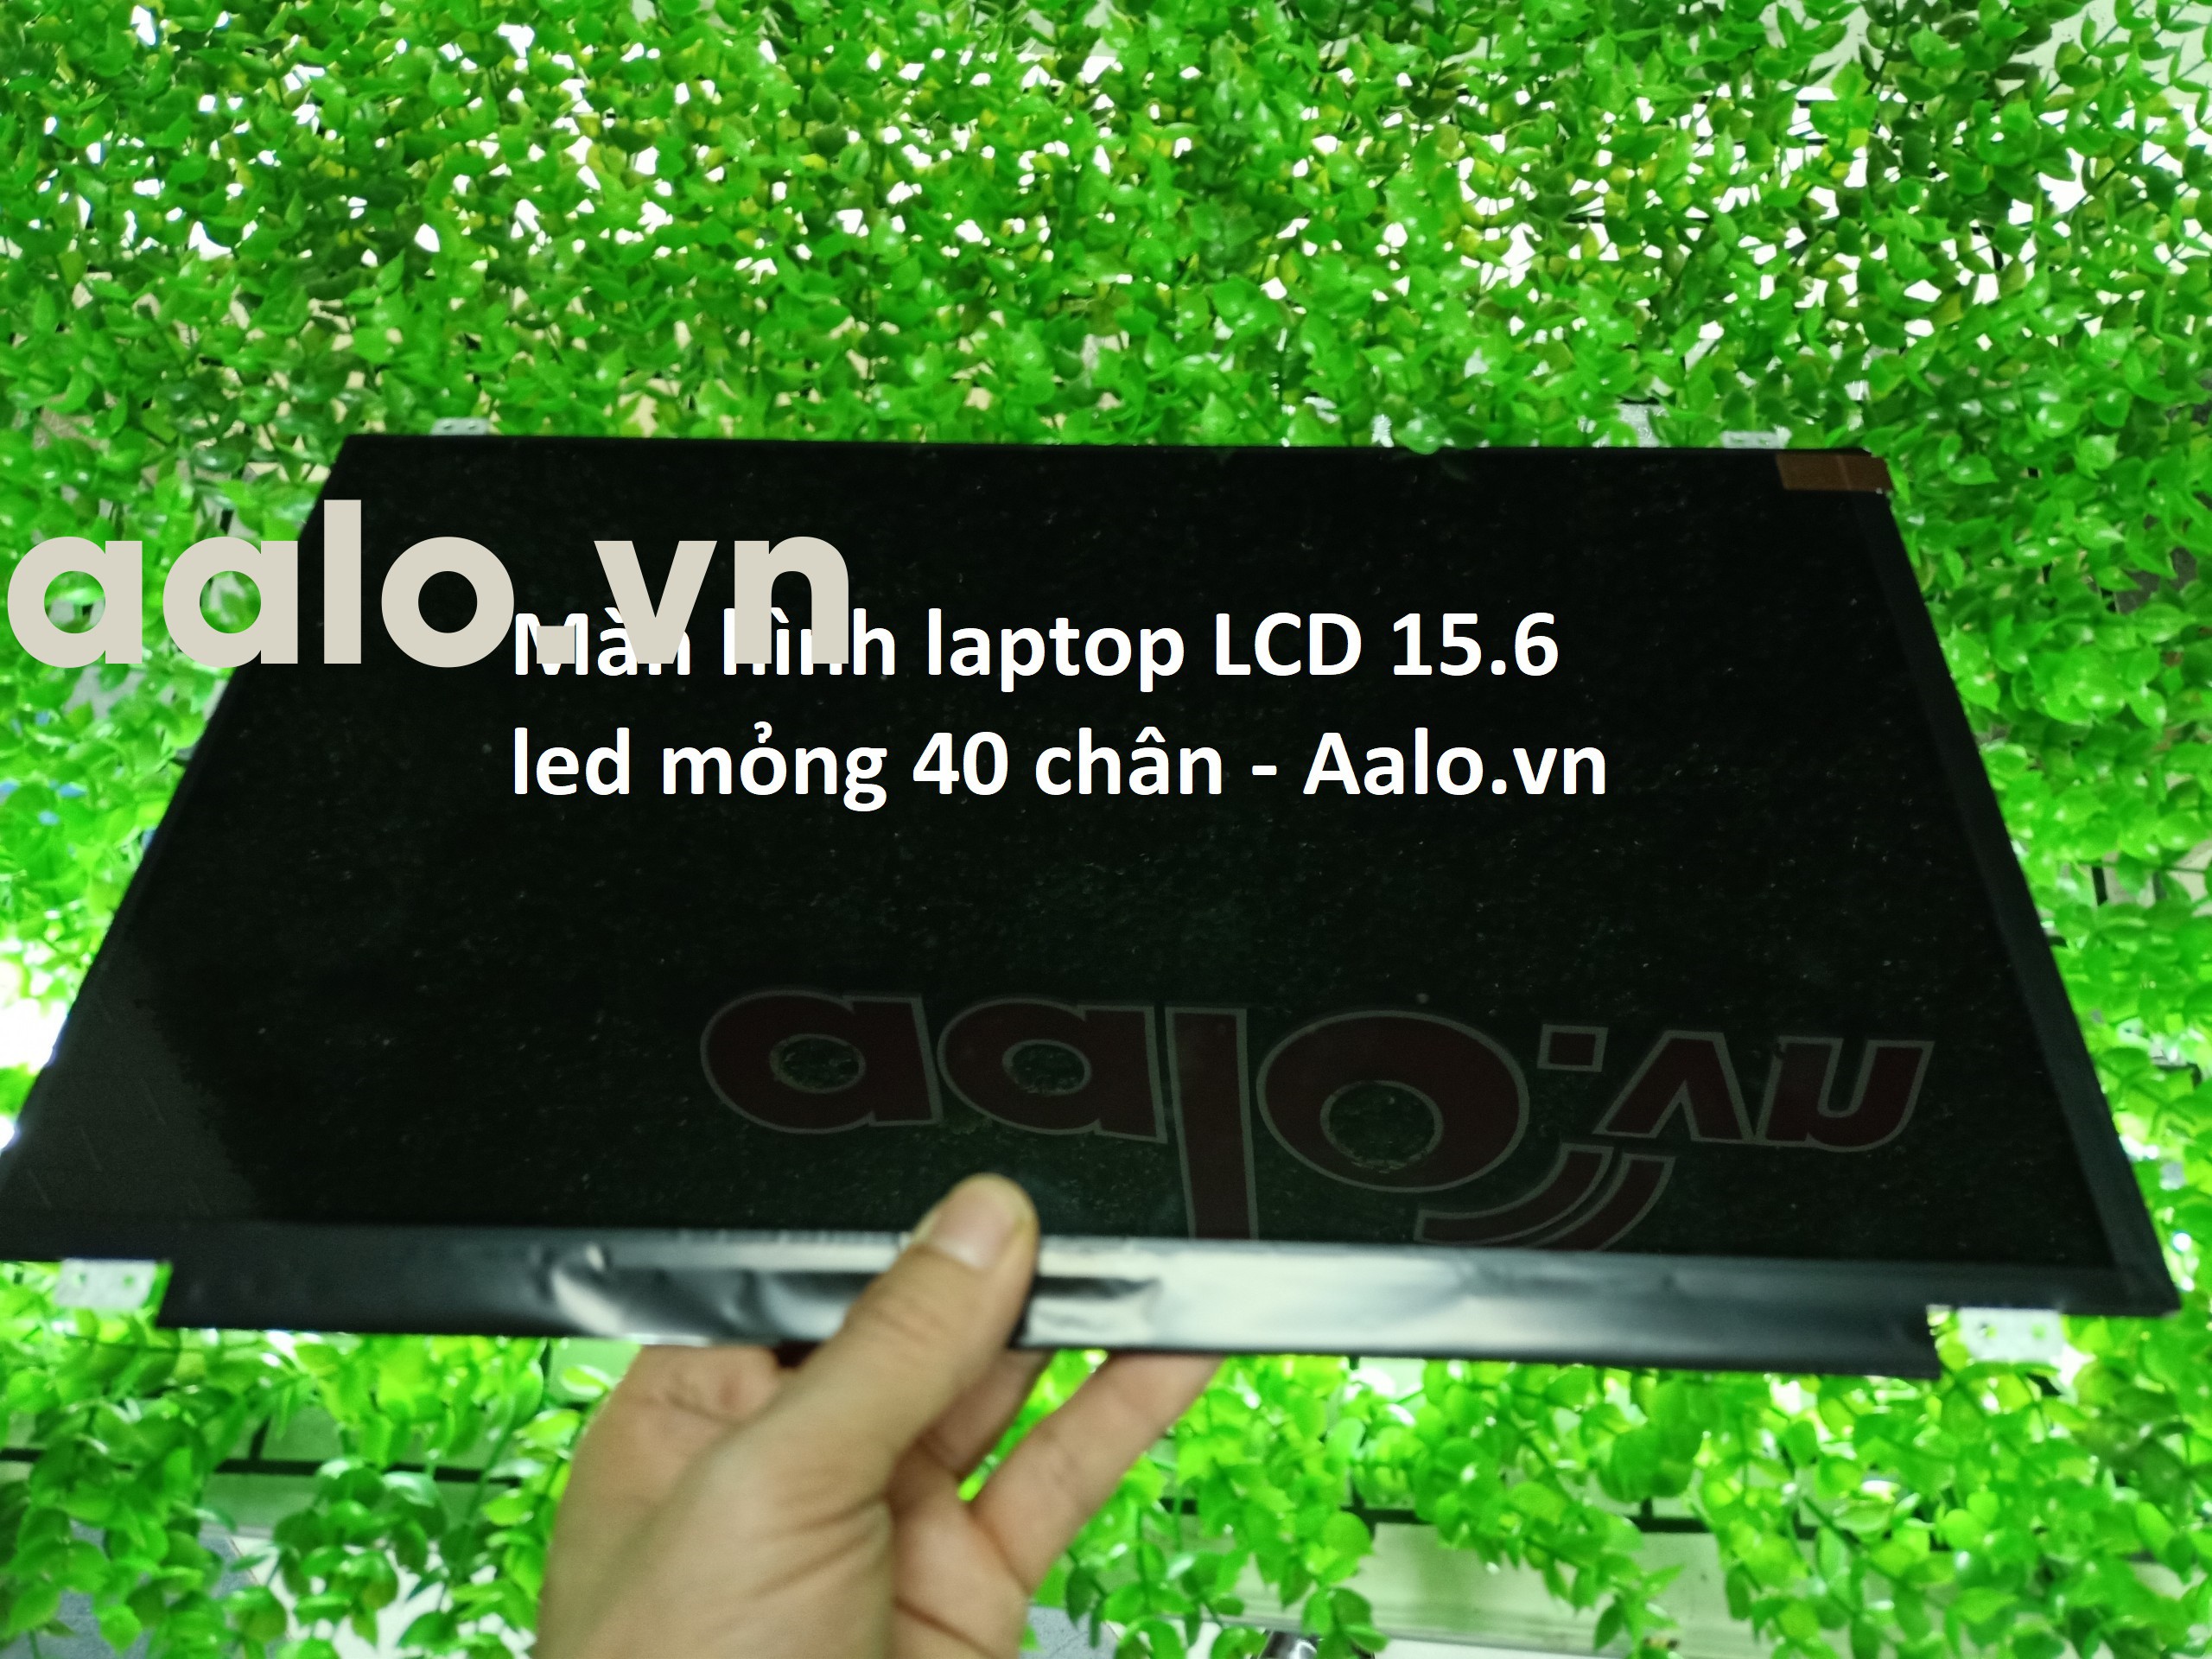 Màn hình laptop LCD 15.6 led mỏng 40 chân